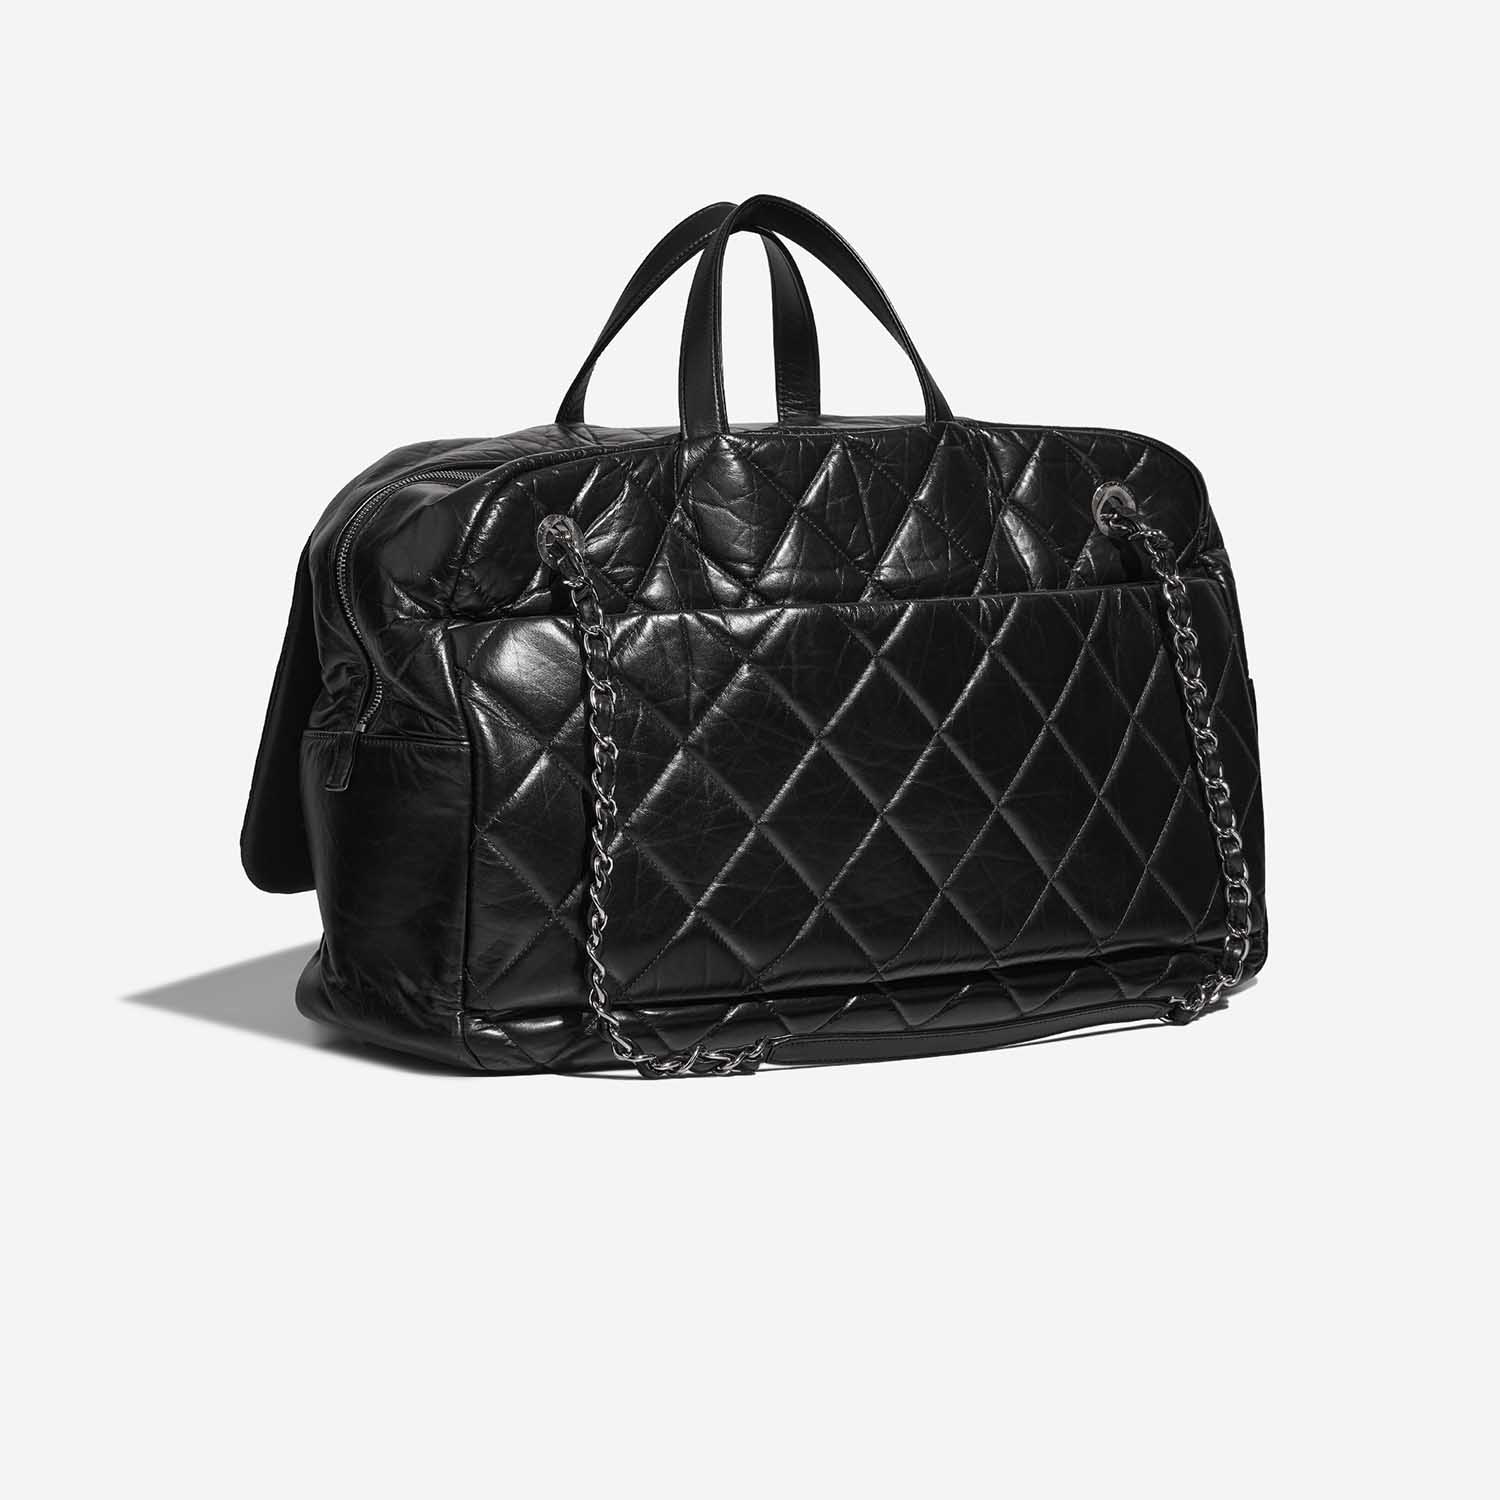 Chanel ExpressBowling Black Side Back | Verkaufen Sie Ihre Designer-Tasche auf Saclab.com